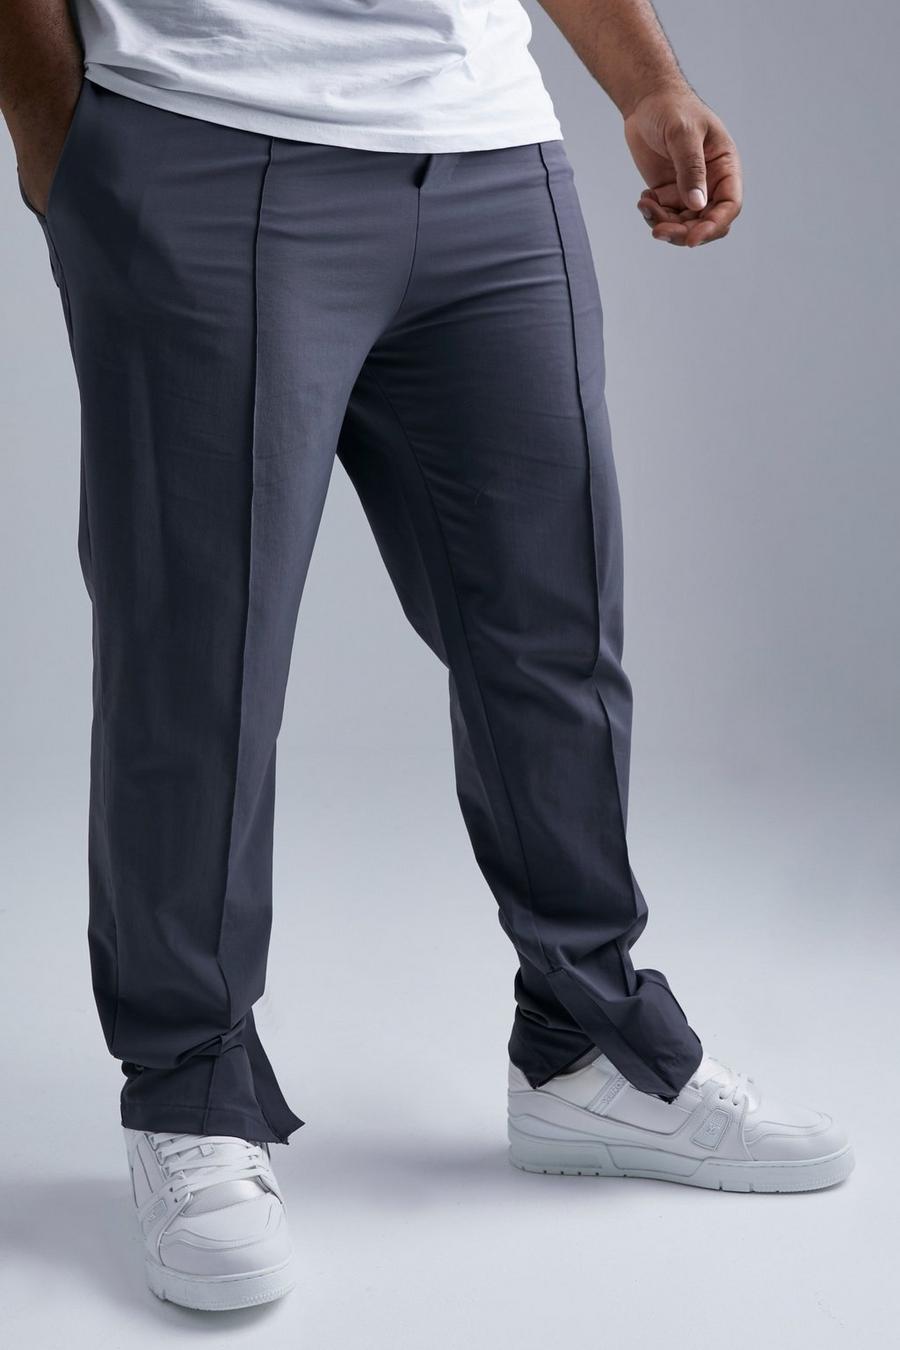 Pantalón Plus ajustado elástico en 4 direcciones con alforza, Dark grey